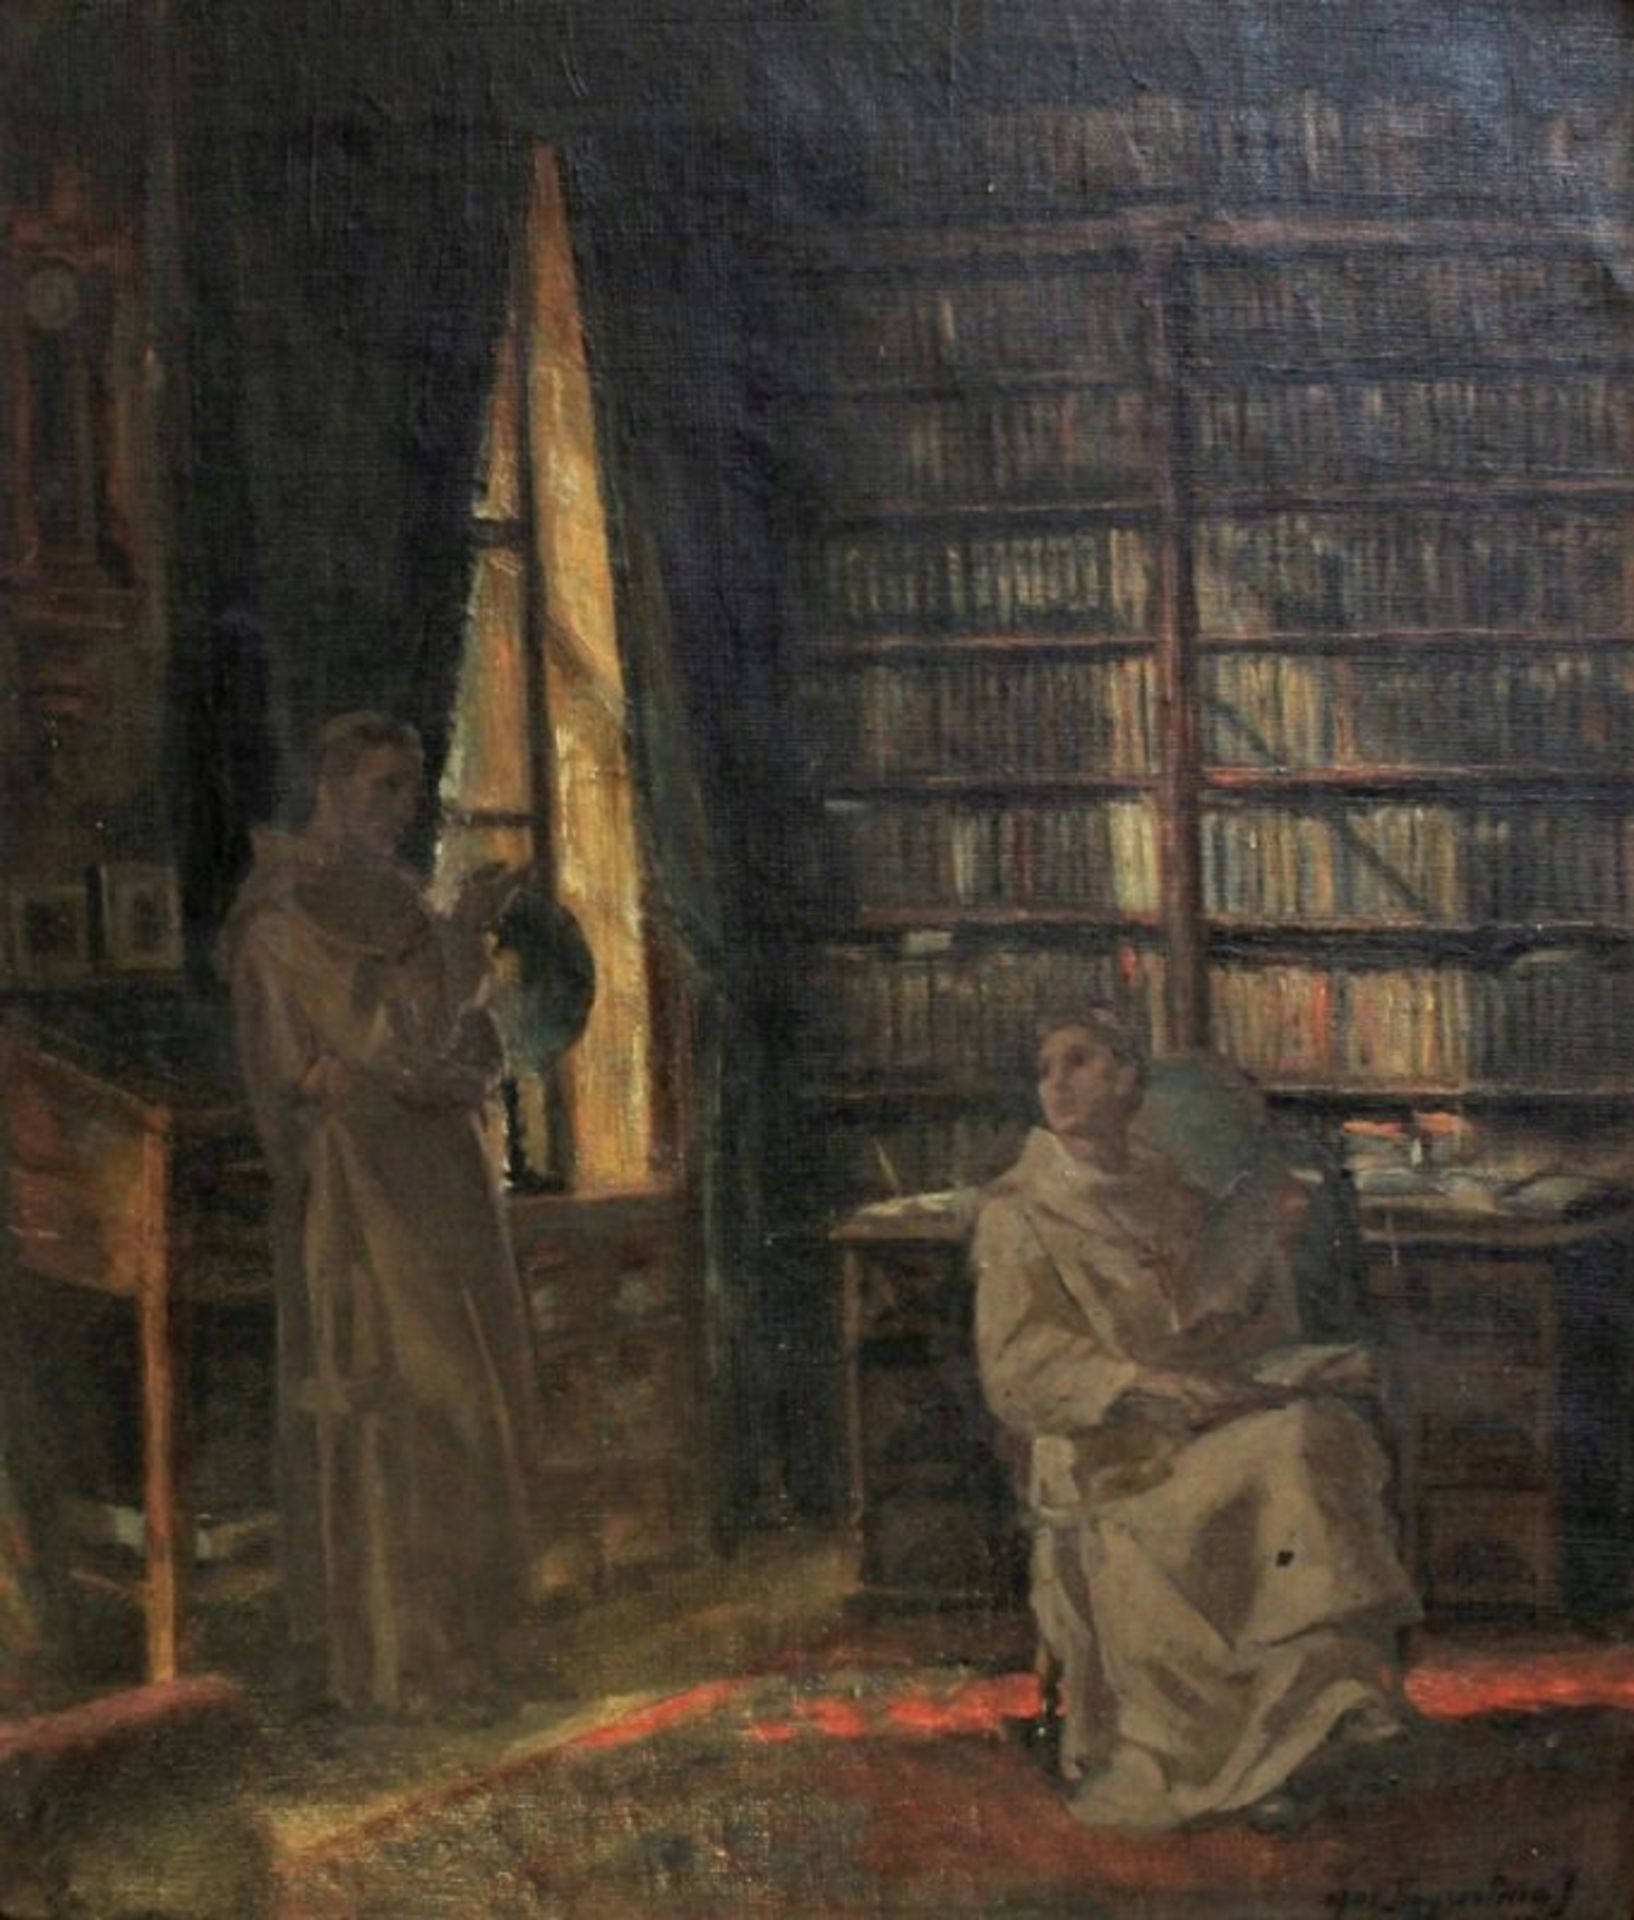 Gemälde - Anonym (19./20.Jahrhundert) "Bibliothek mit zwei Mönchen", r.u. undeutlich signiert,